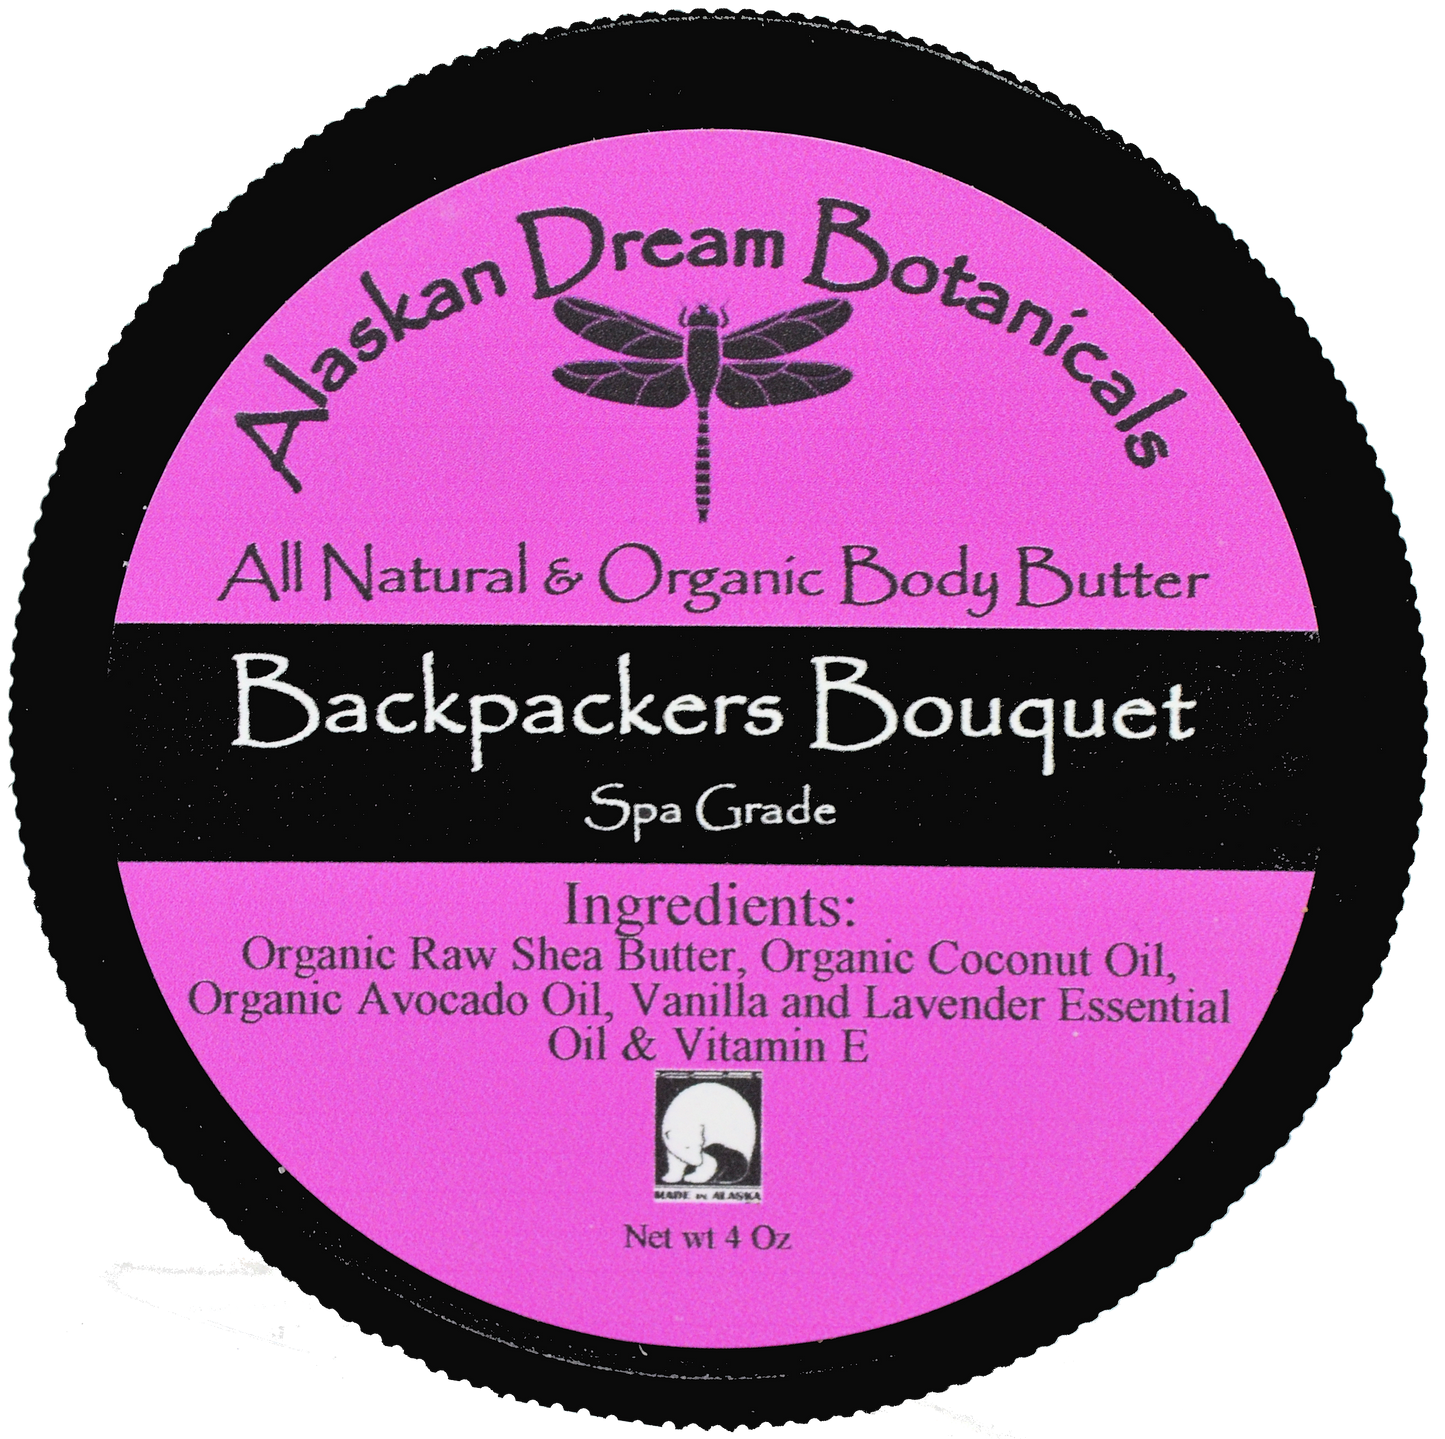 Backpackers Bouquet Spa Grade Body Butter - Alaskan Dream Botanicals